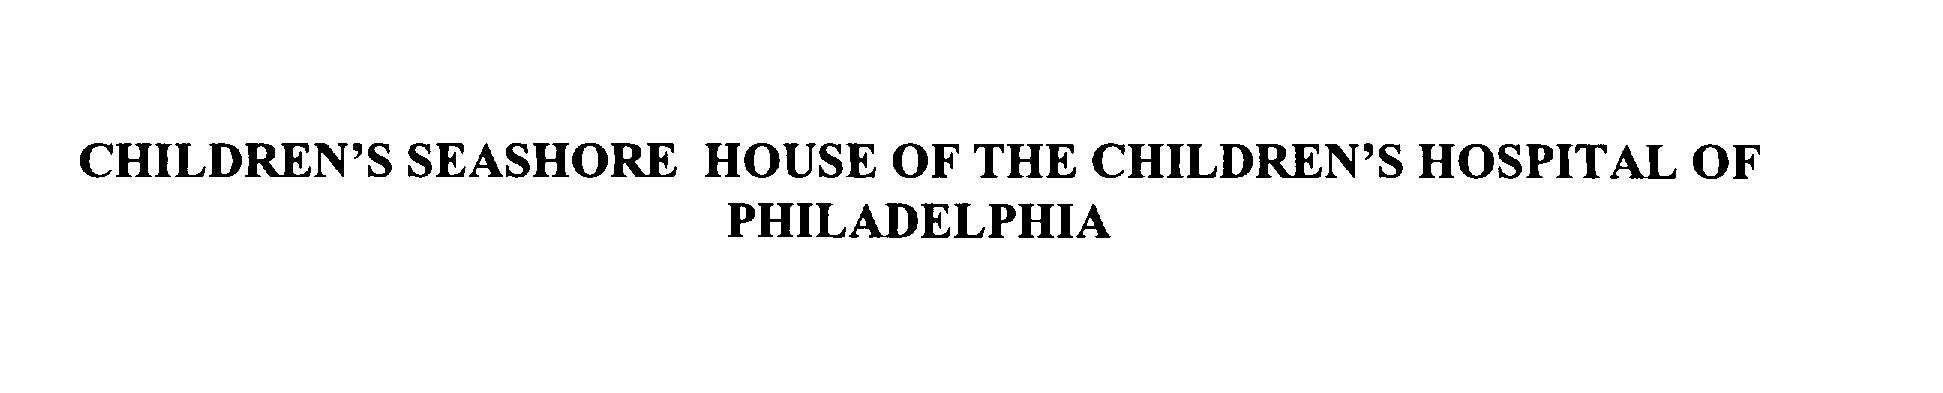  CHILDREN'S SEASHORE HOUSE OF THE CHILDREN'S HOSPITAL OF PHILADELPHIA